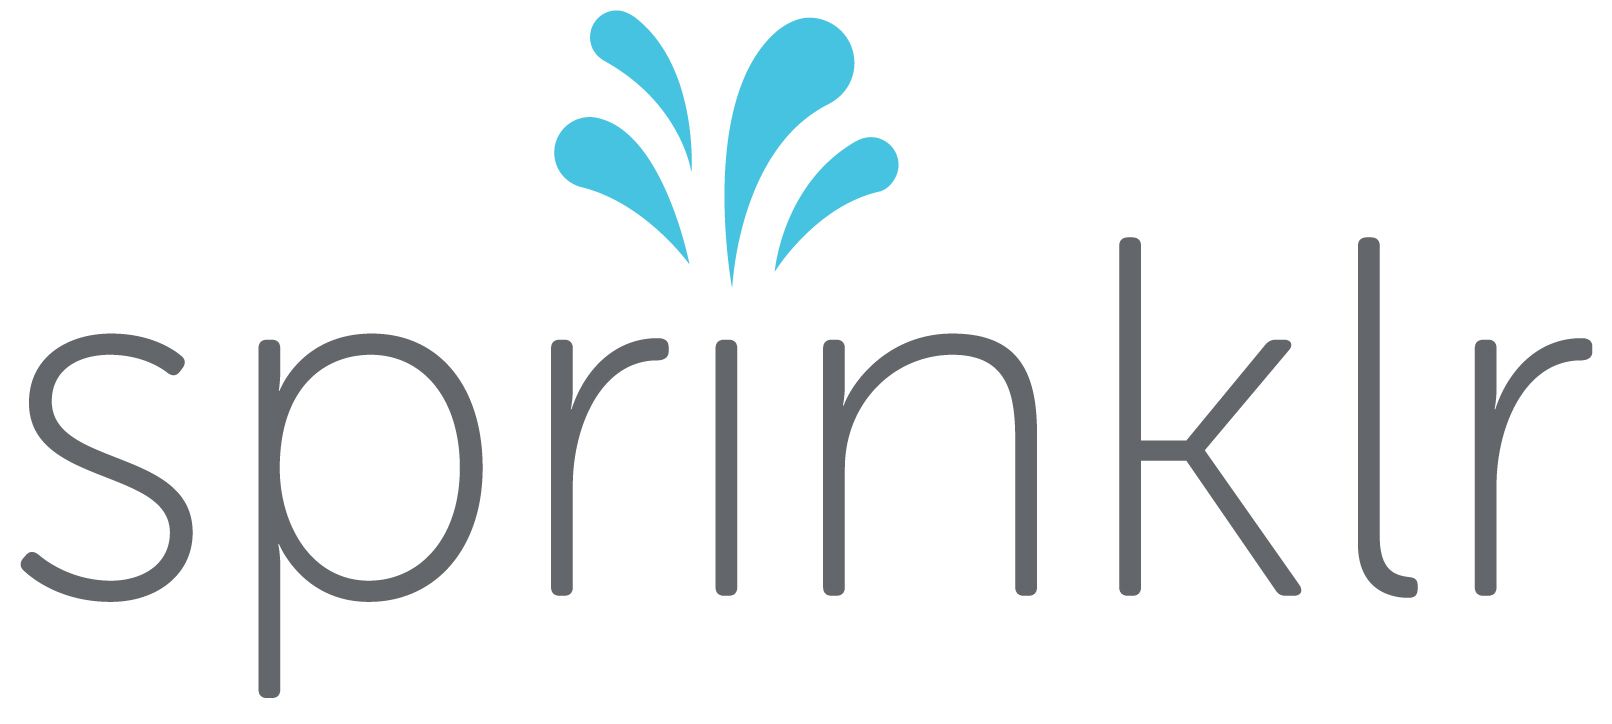 Sprinklr Company Logo